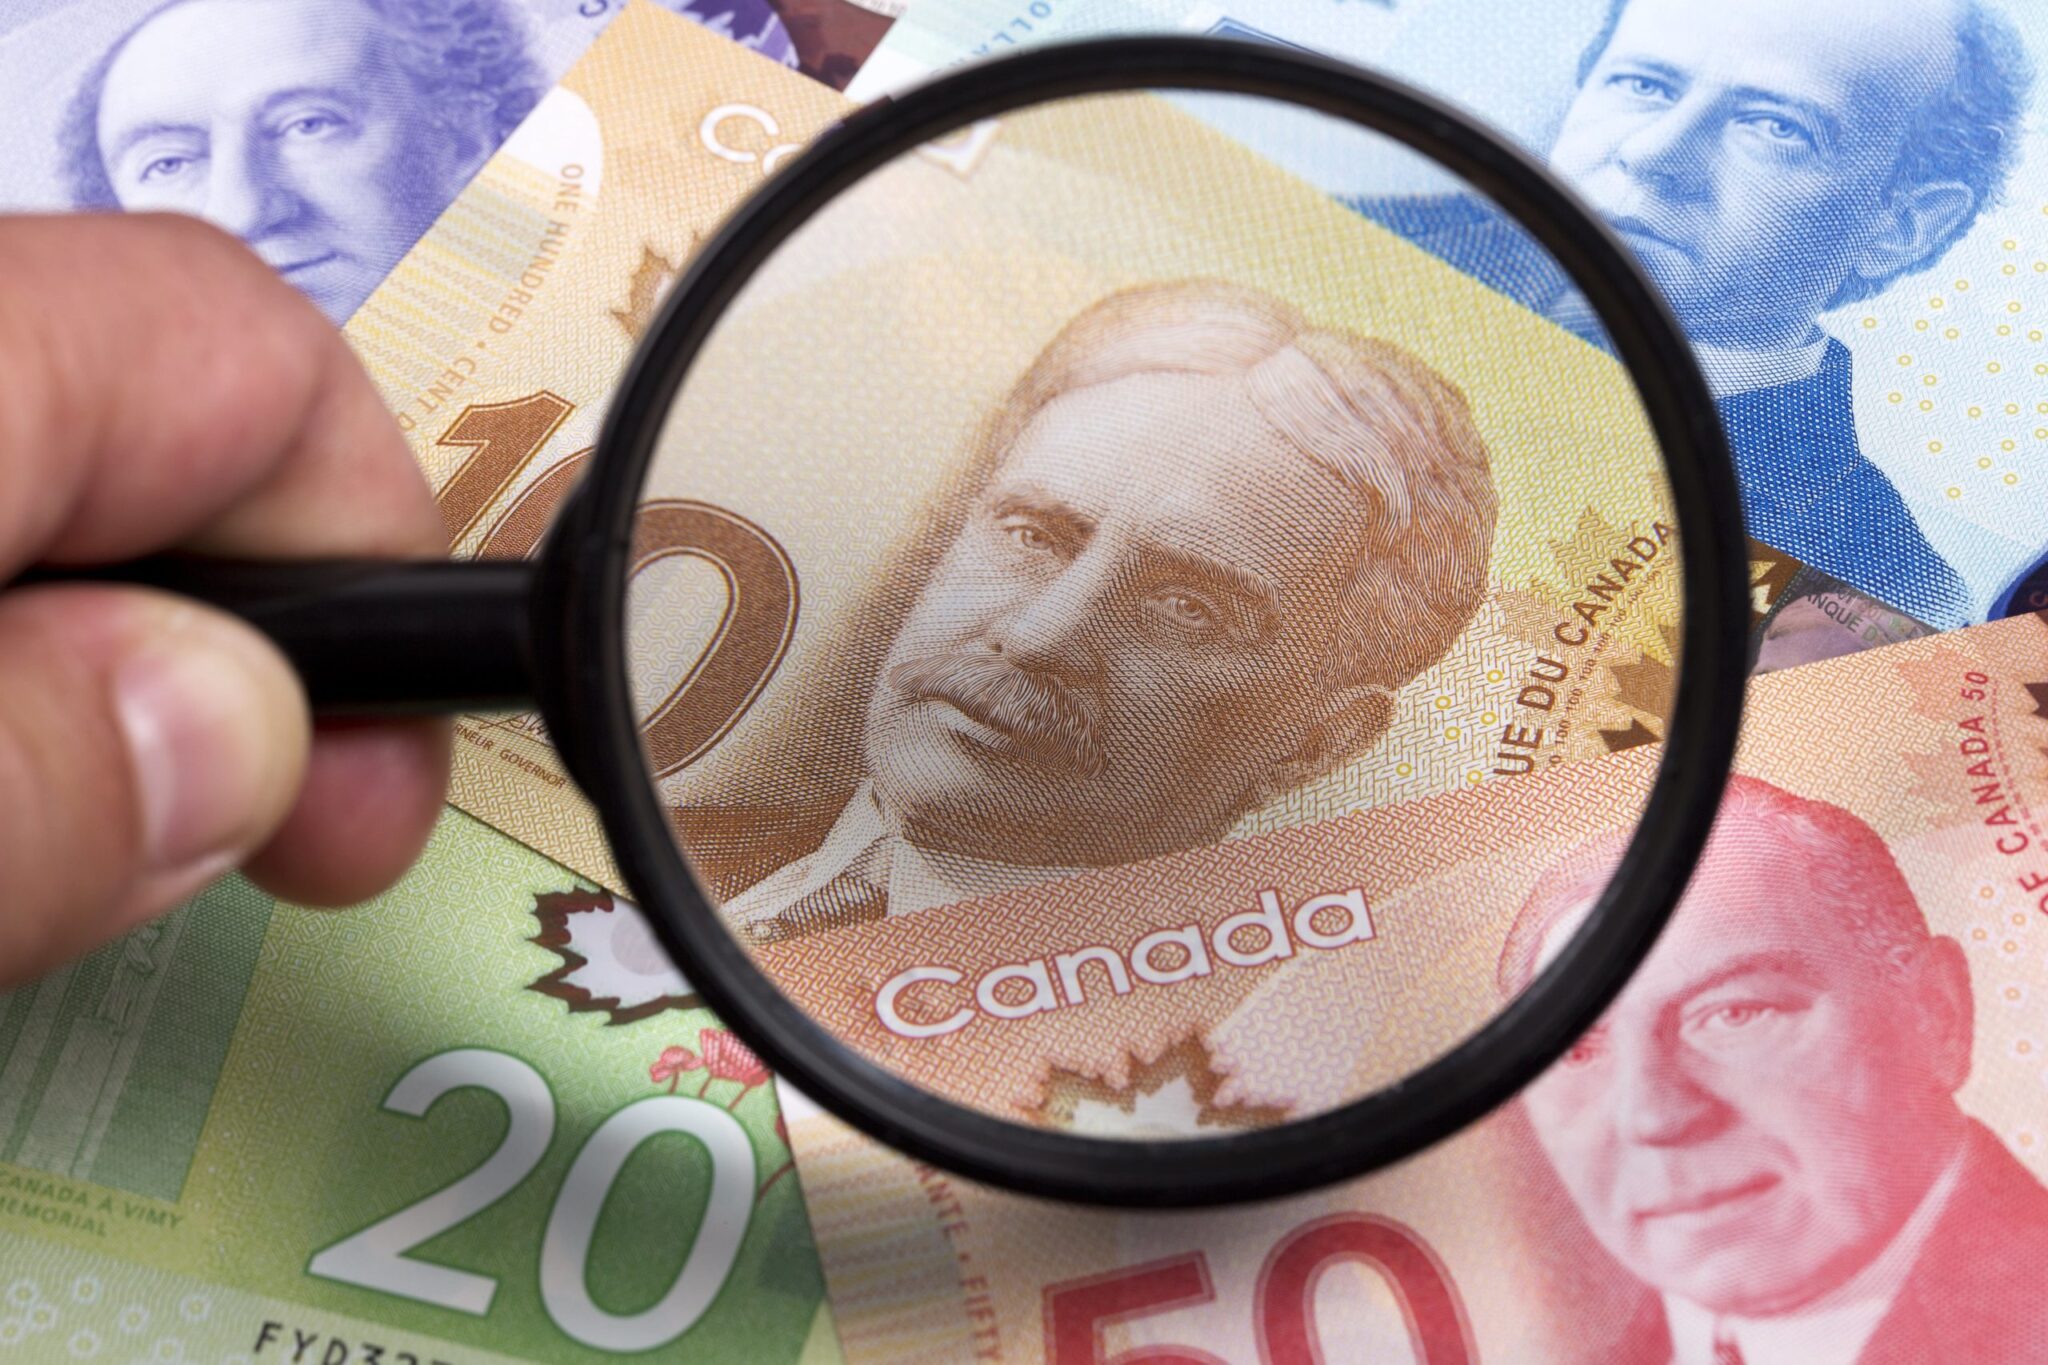 mata uang kanada dengan kaca pembesar